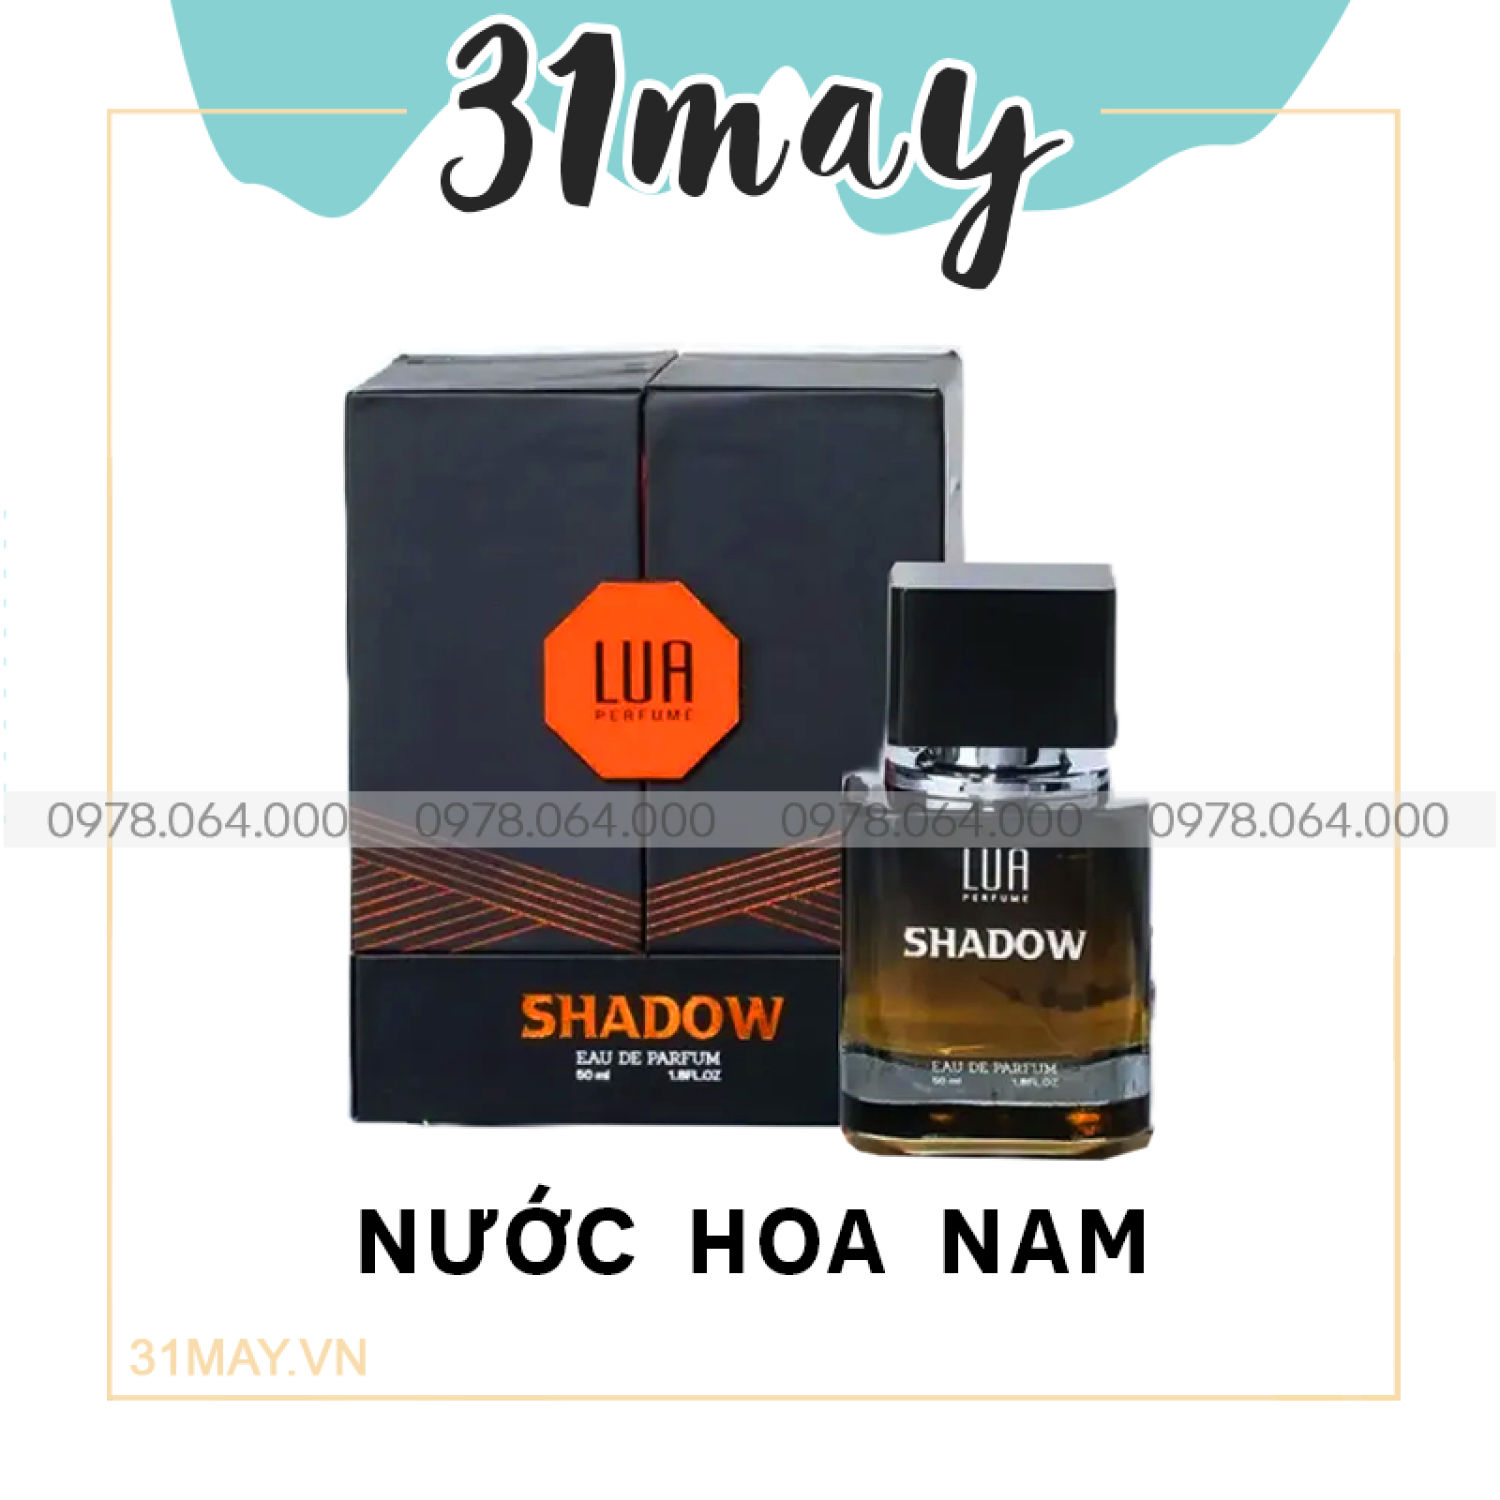 Nước Hoa Nam Shadow Lua Perfume Chính Hãng